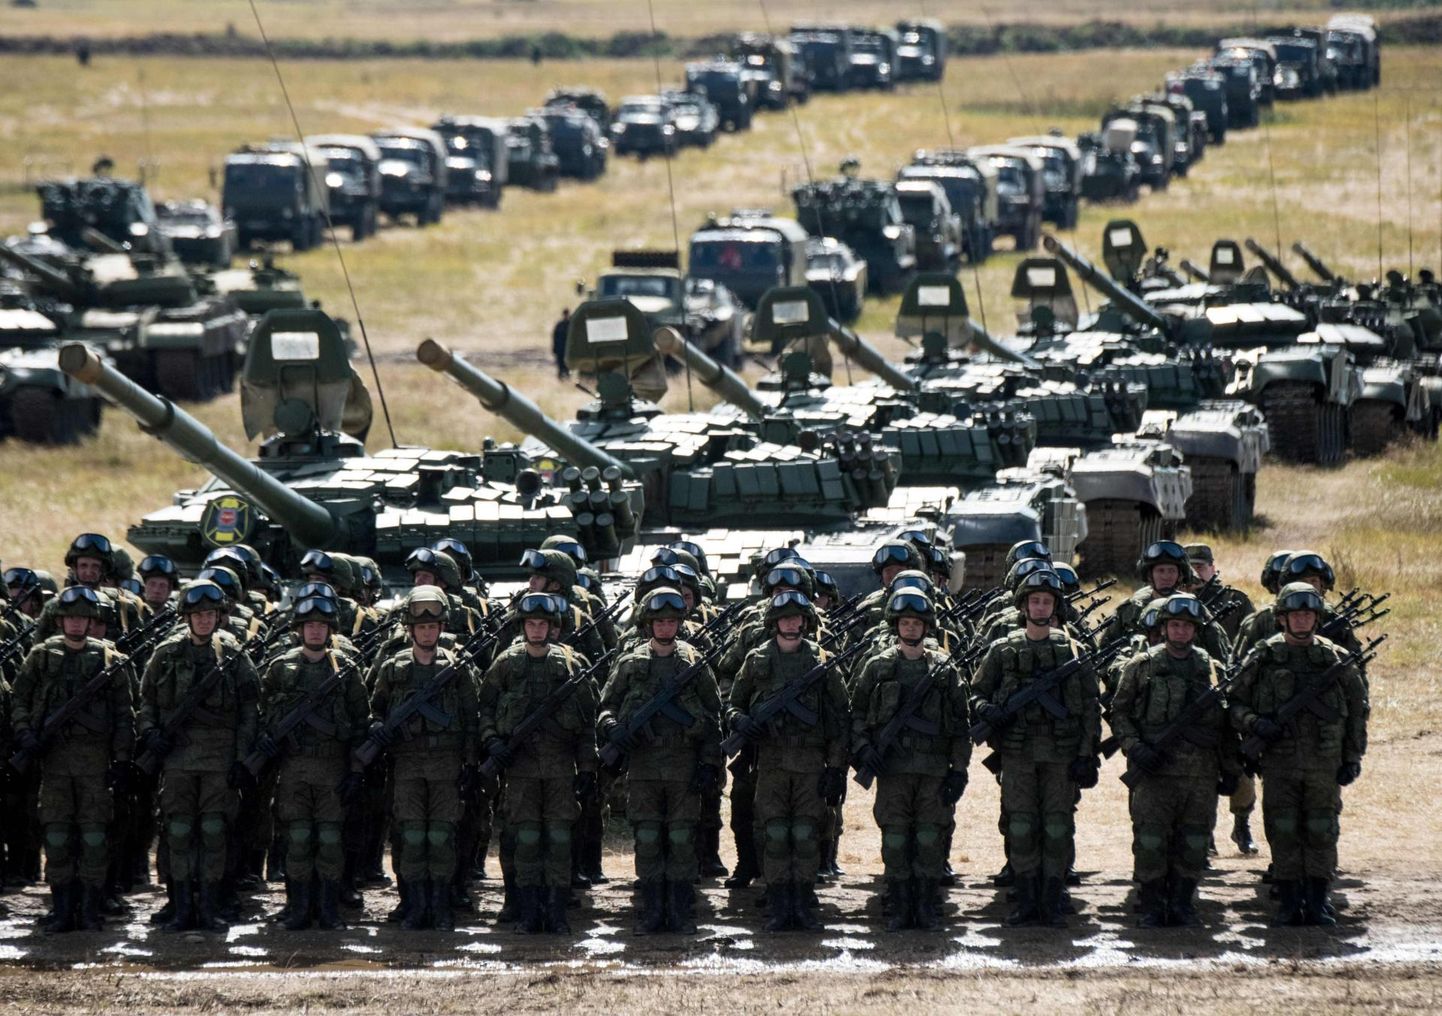 Venemaa sõdurid möödunud aasta septembris sõjaväeõppustel Vostok 2018. Välisluure­ameti kinnitusel on Venemaa kõigil viimase kümnendi õppustel harjutatud sõda NATO vastu. 